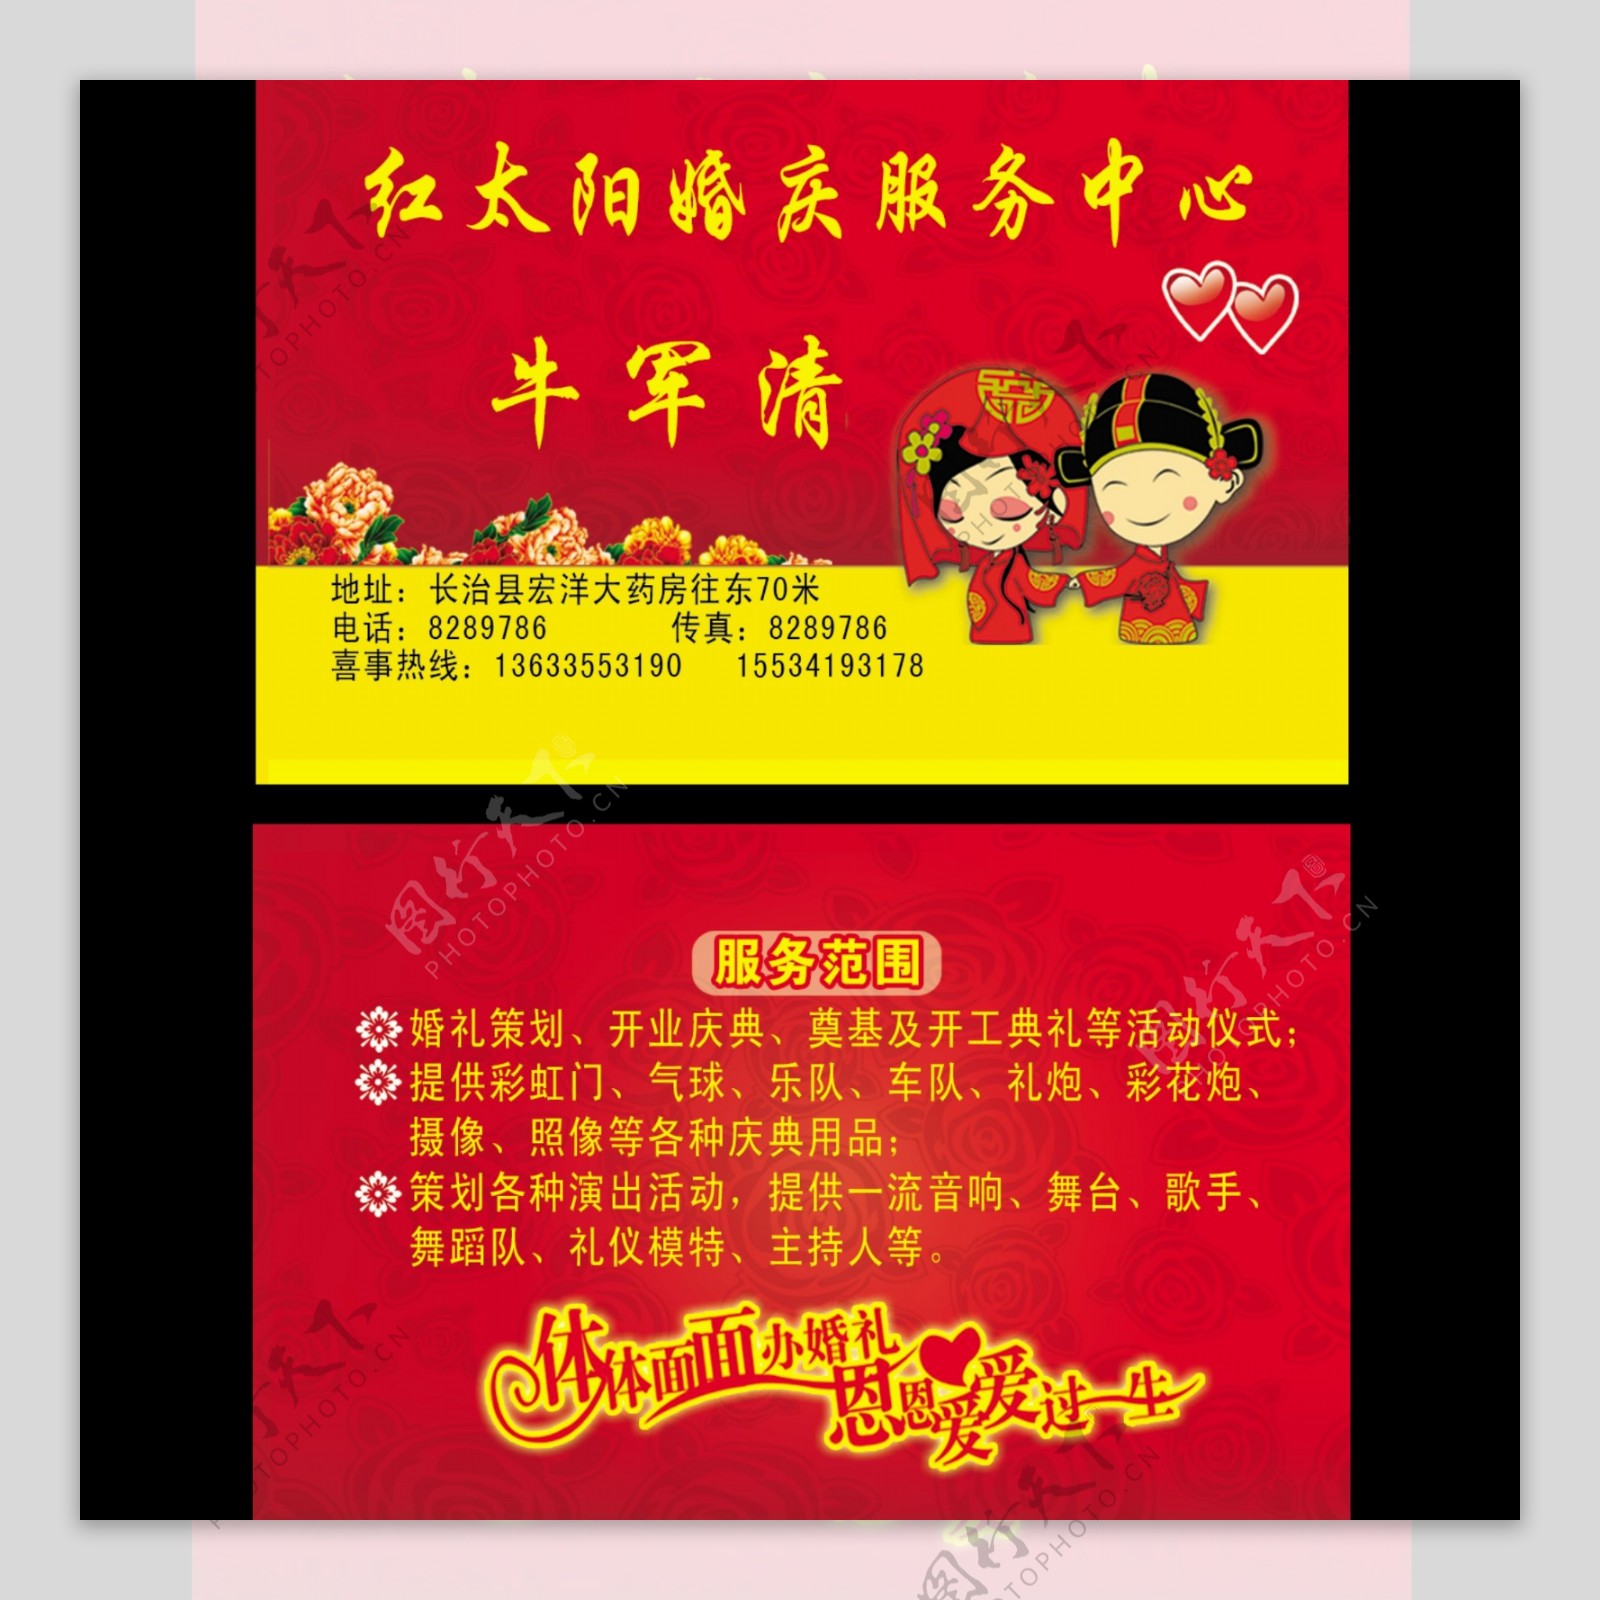 红太阳婚庆服务中心名片图片